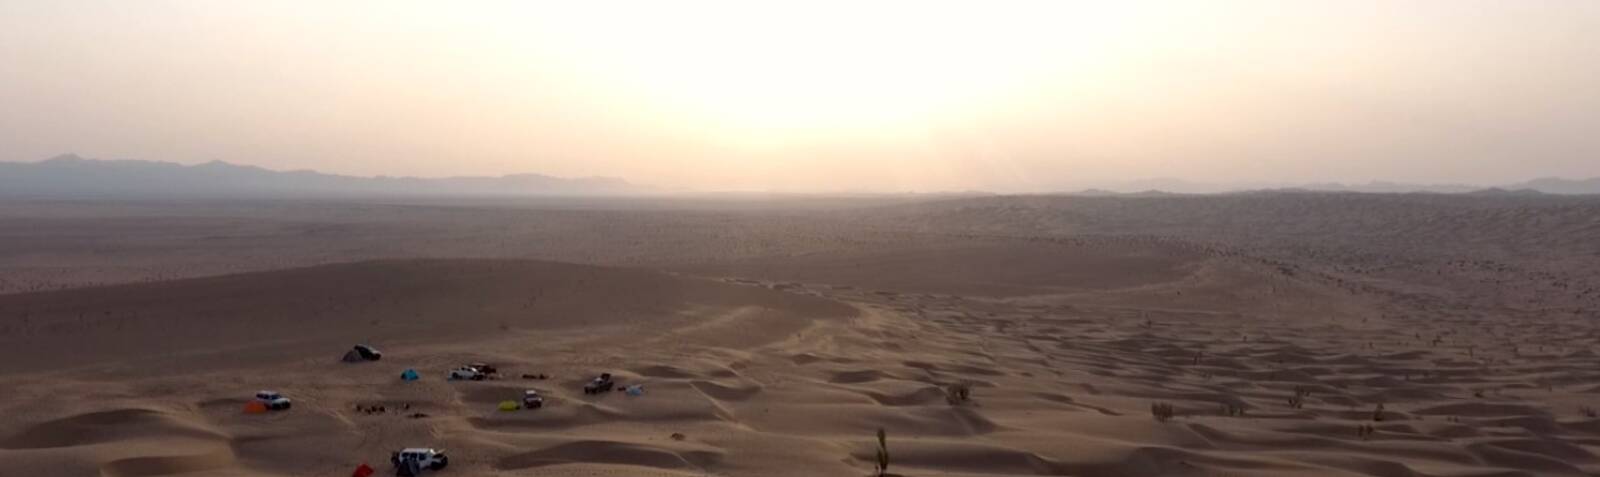 Rig-e Jenn Desert